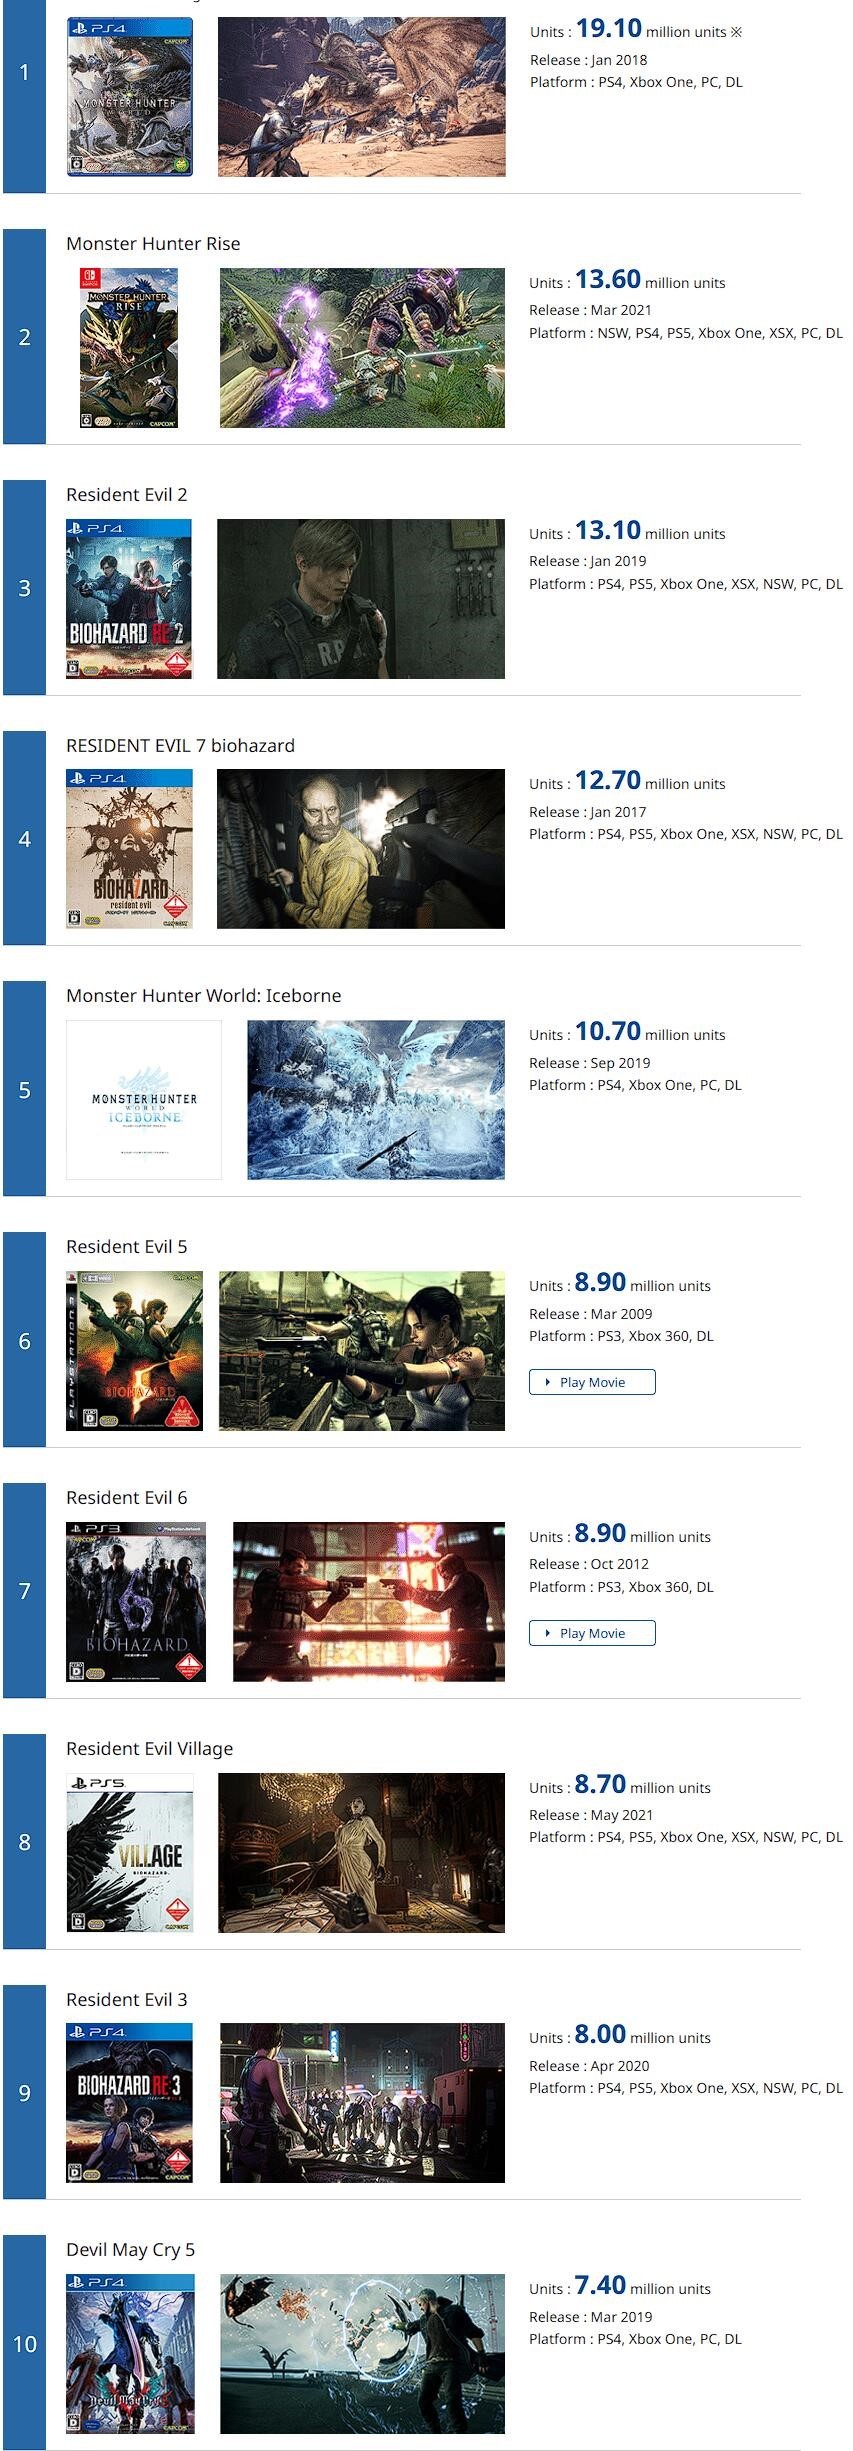 《惡靈古堡8》全球銷量破870萬份 登CAPCOM銷量榜單第8名